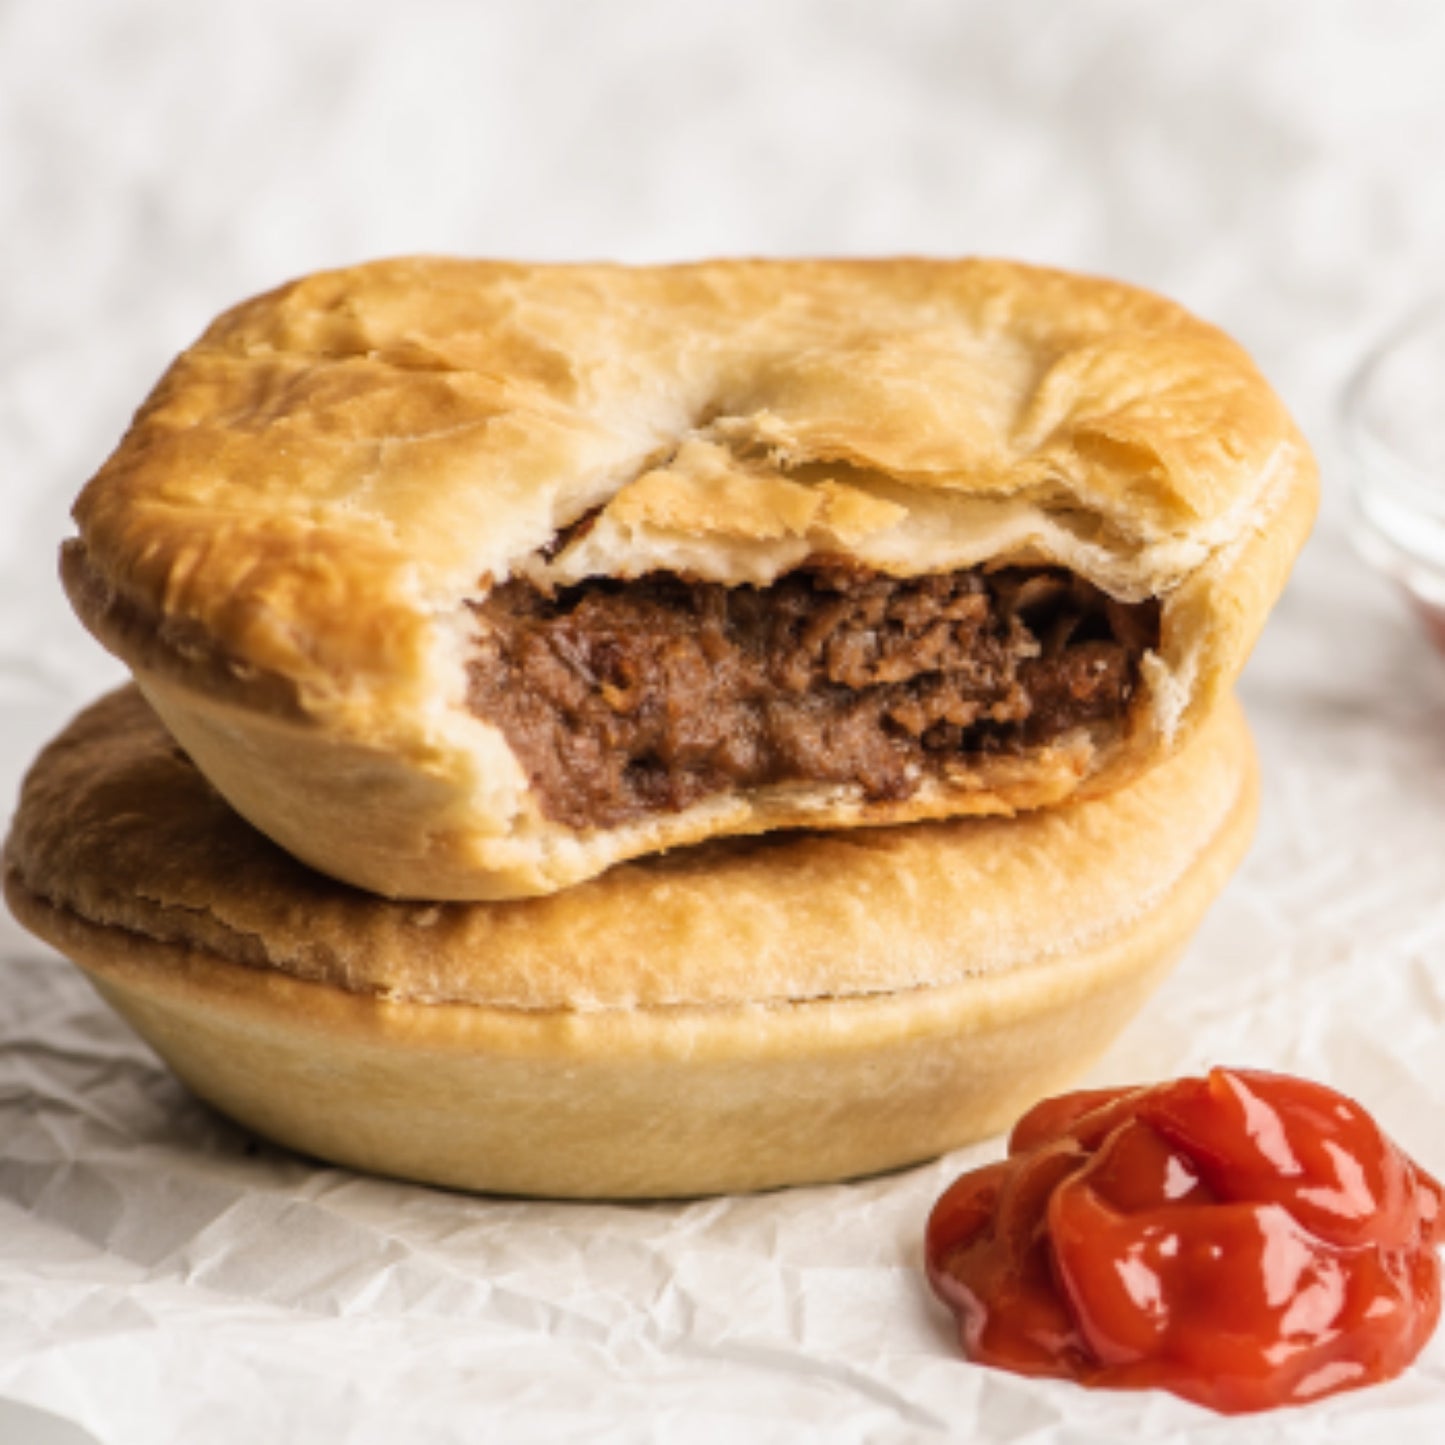 Aussie Handmade Meat Pie - Steak and Gravy